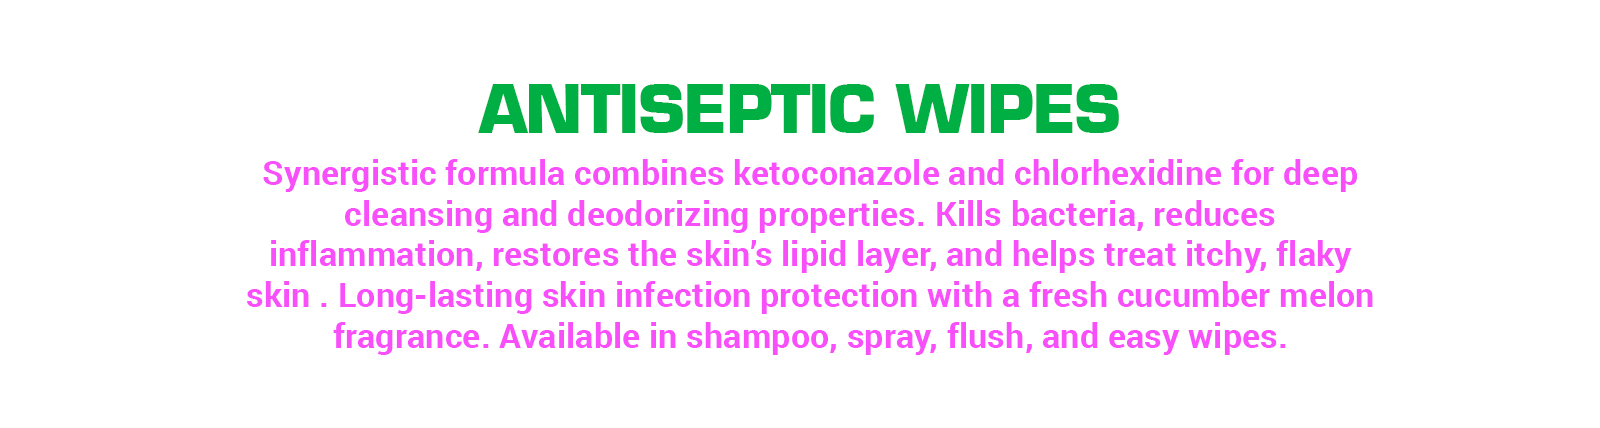 antiseptic-wipes